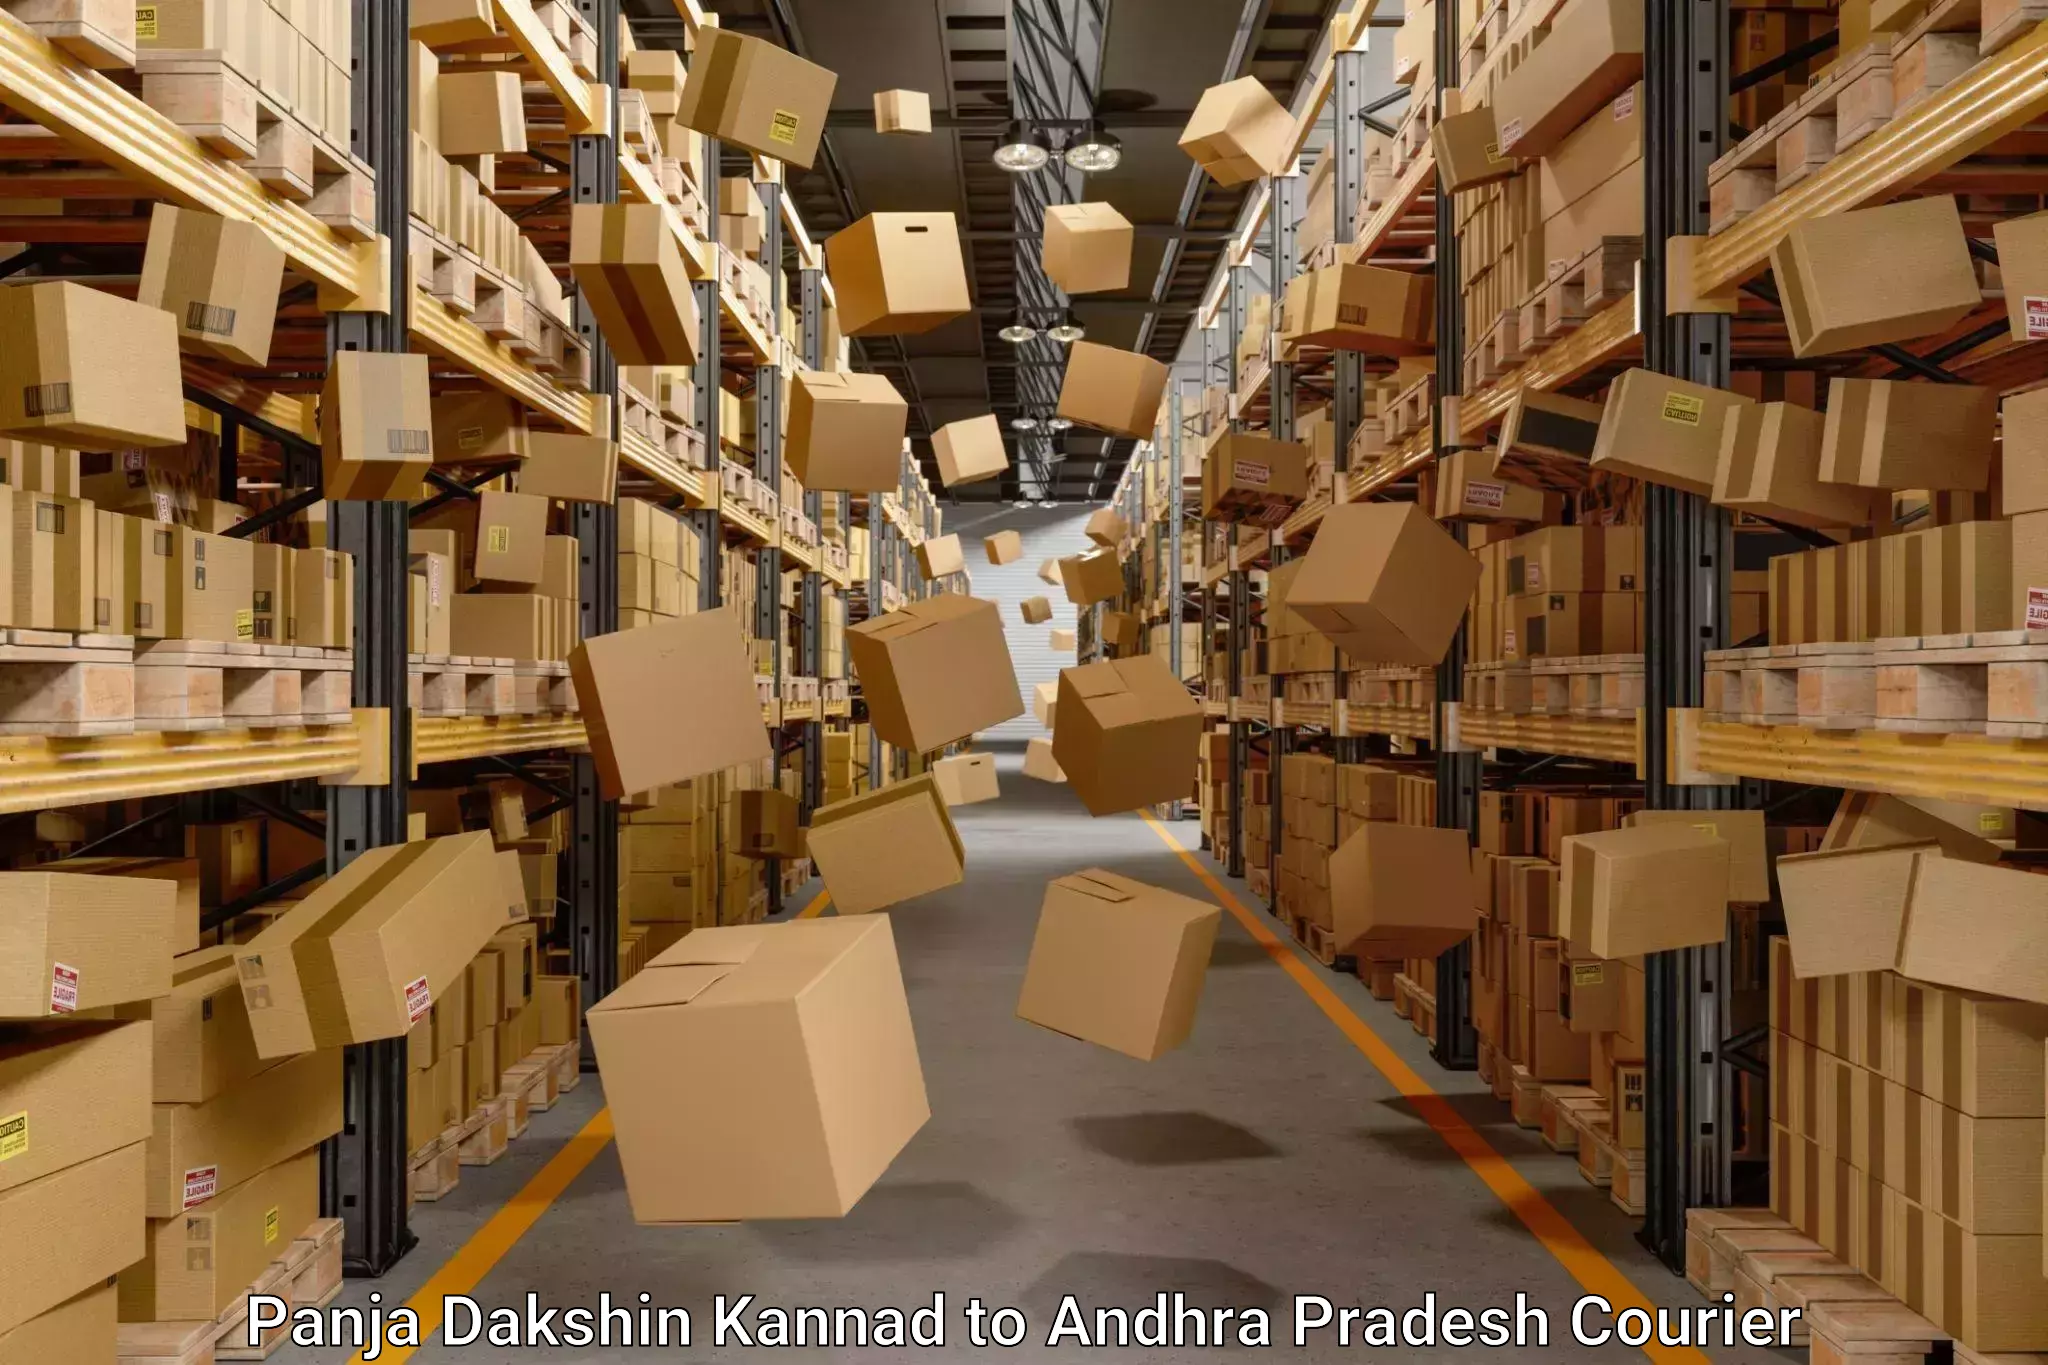 Furniture transport solutions Panja Dakshin Kannad to Andhra Pradesh